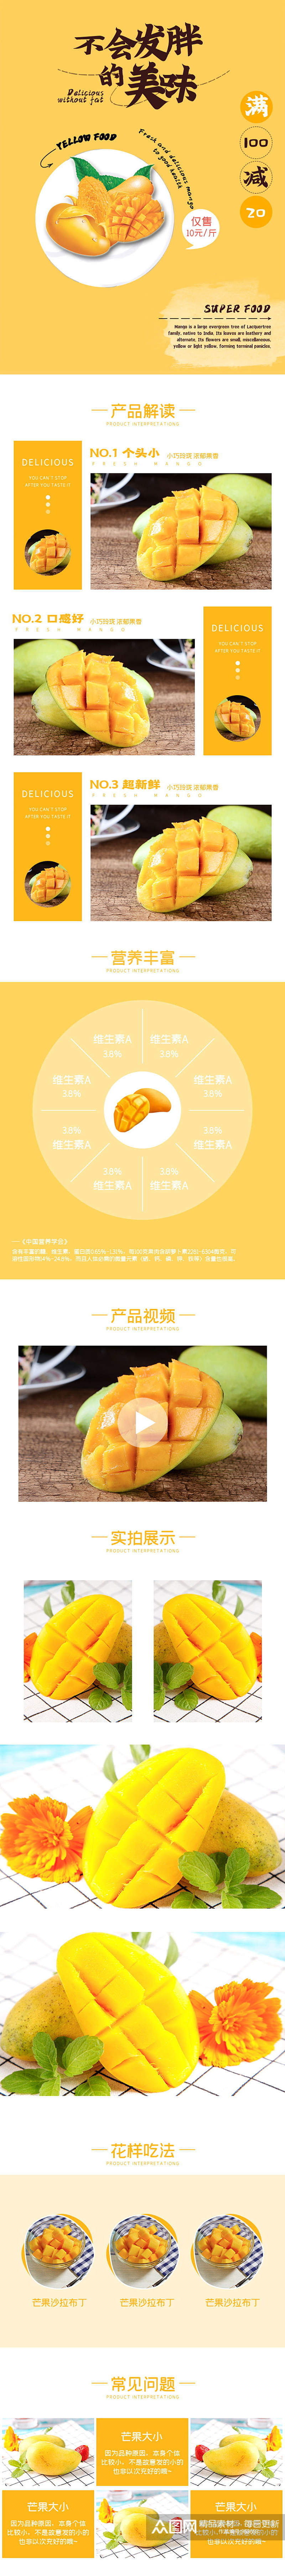 黄色模板淘宝生鲜芒果详情页素材